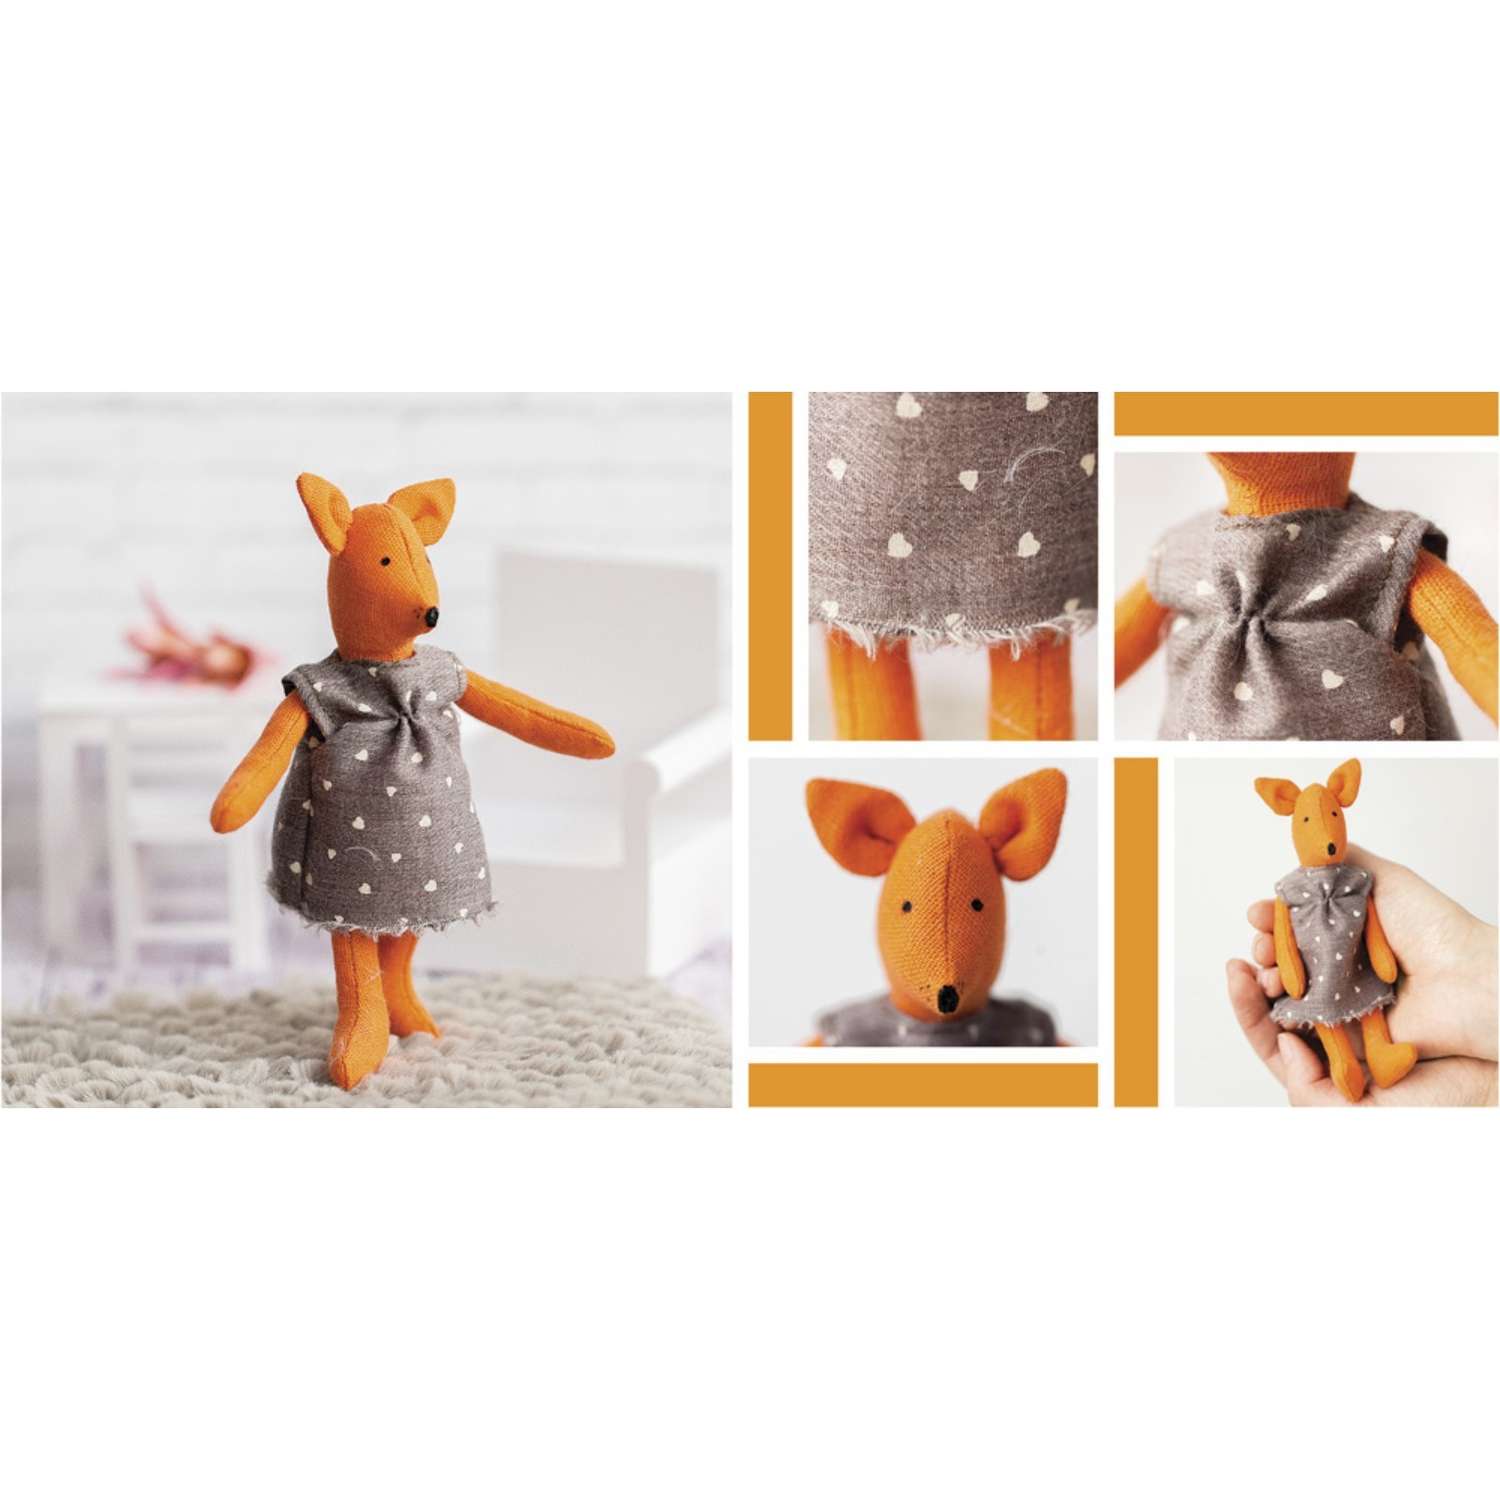 Игрушка–малютка Арт Узор «Лисичка Голди». набор для шитья. 21×14.4×0.8 см - фото 7